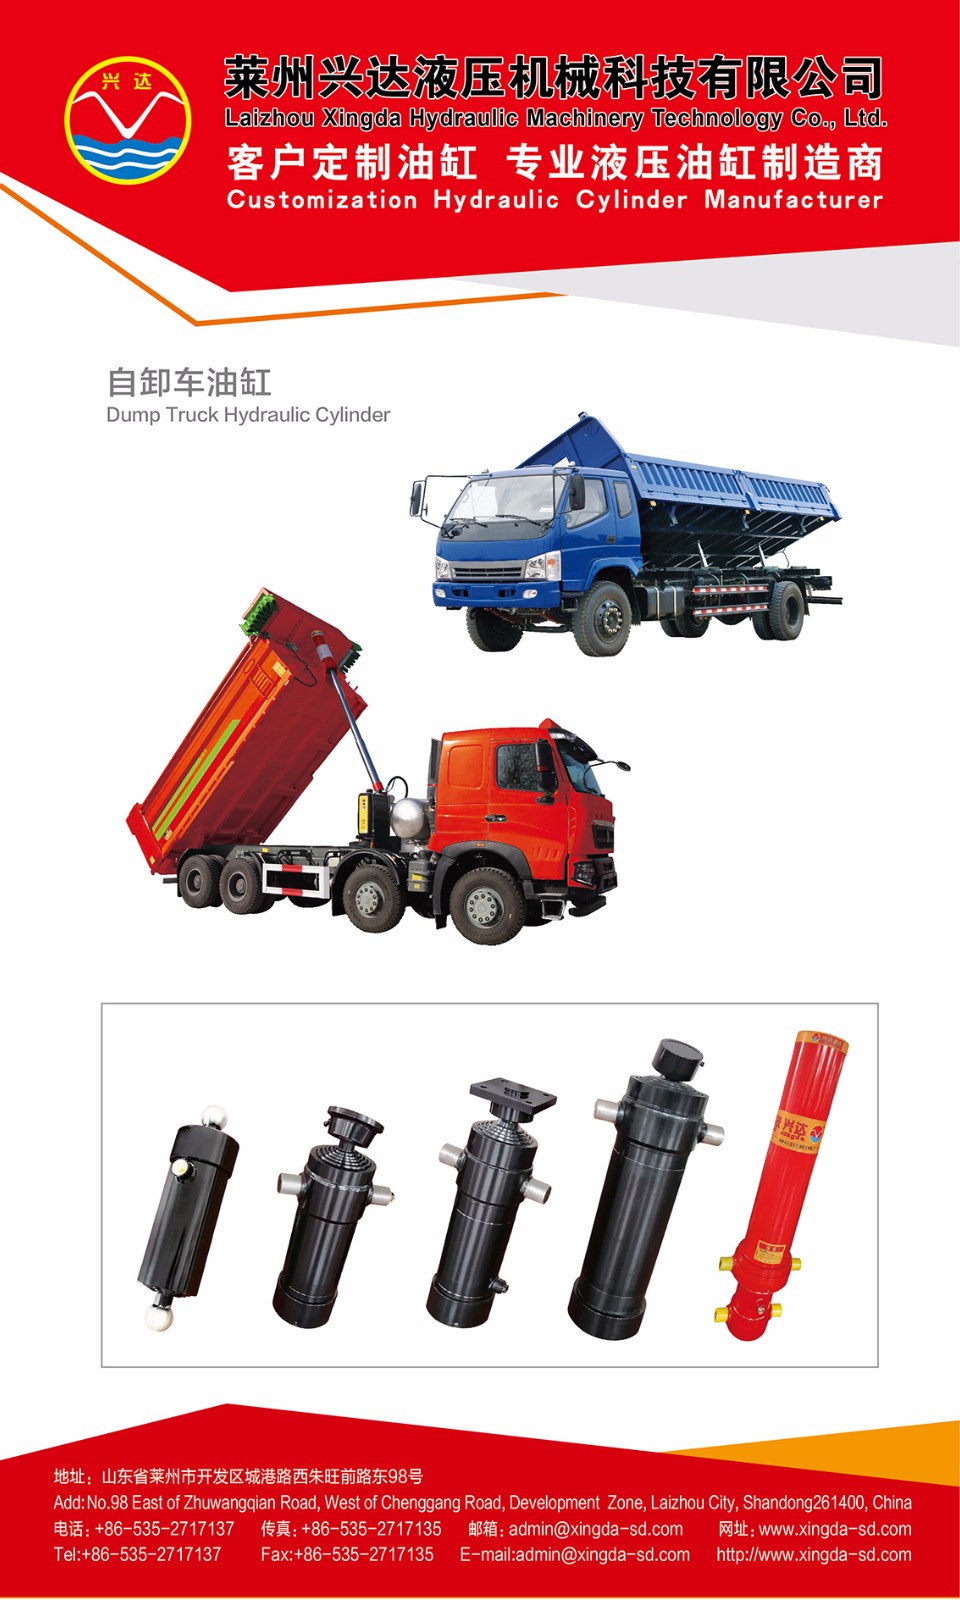 Customization Hydraulic Cylinder for dumper